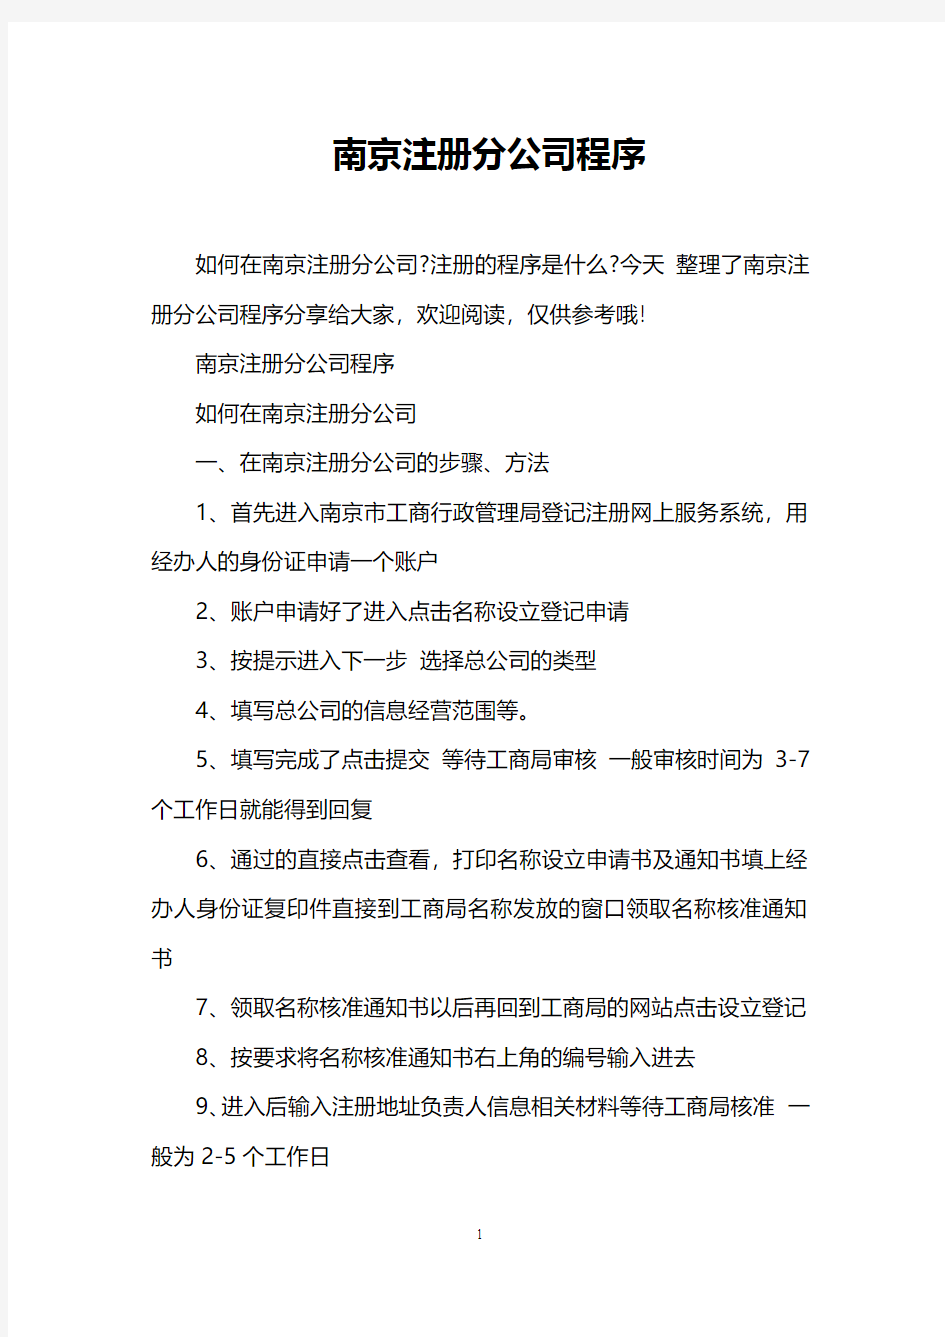 南京注册分公司程序